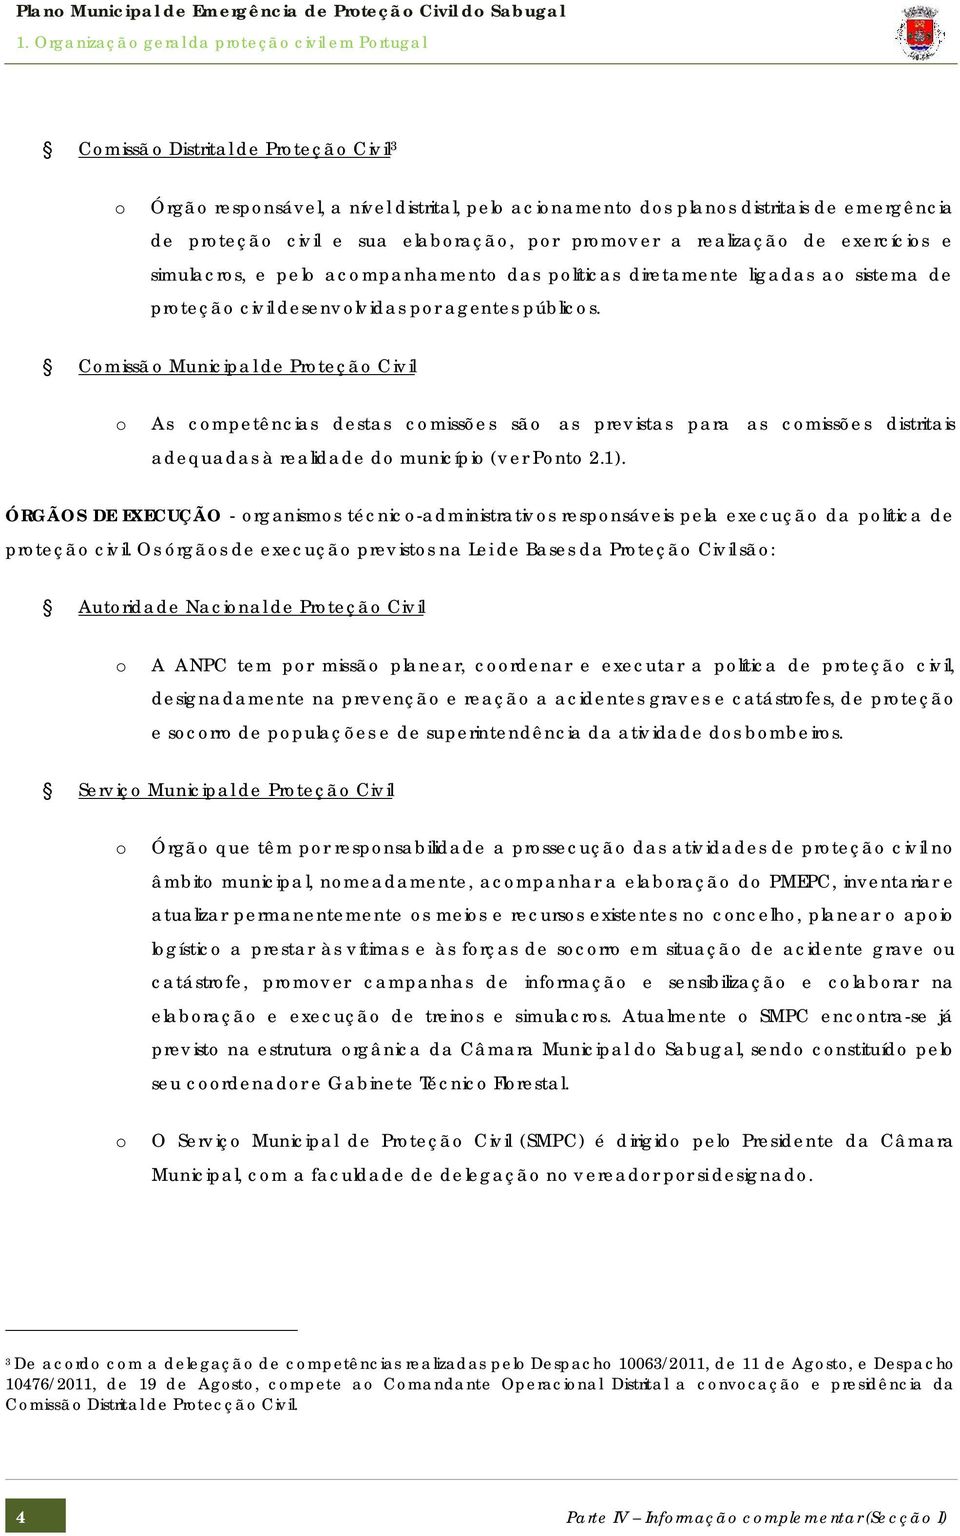 Comissão Municipal de Proteção Civil o As competências destas comissões são as previstas para as comissões distritais adequadas à realidade do município (ver Ponto 2.1).